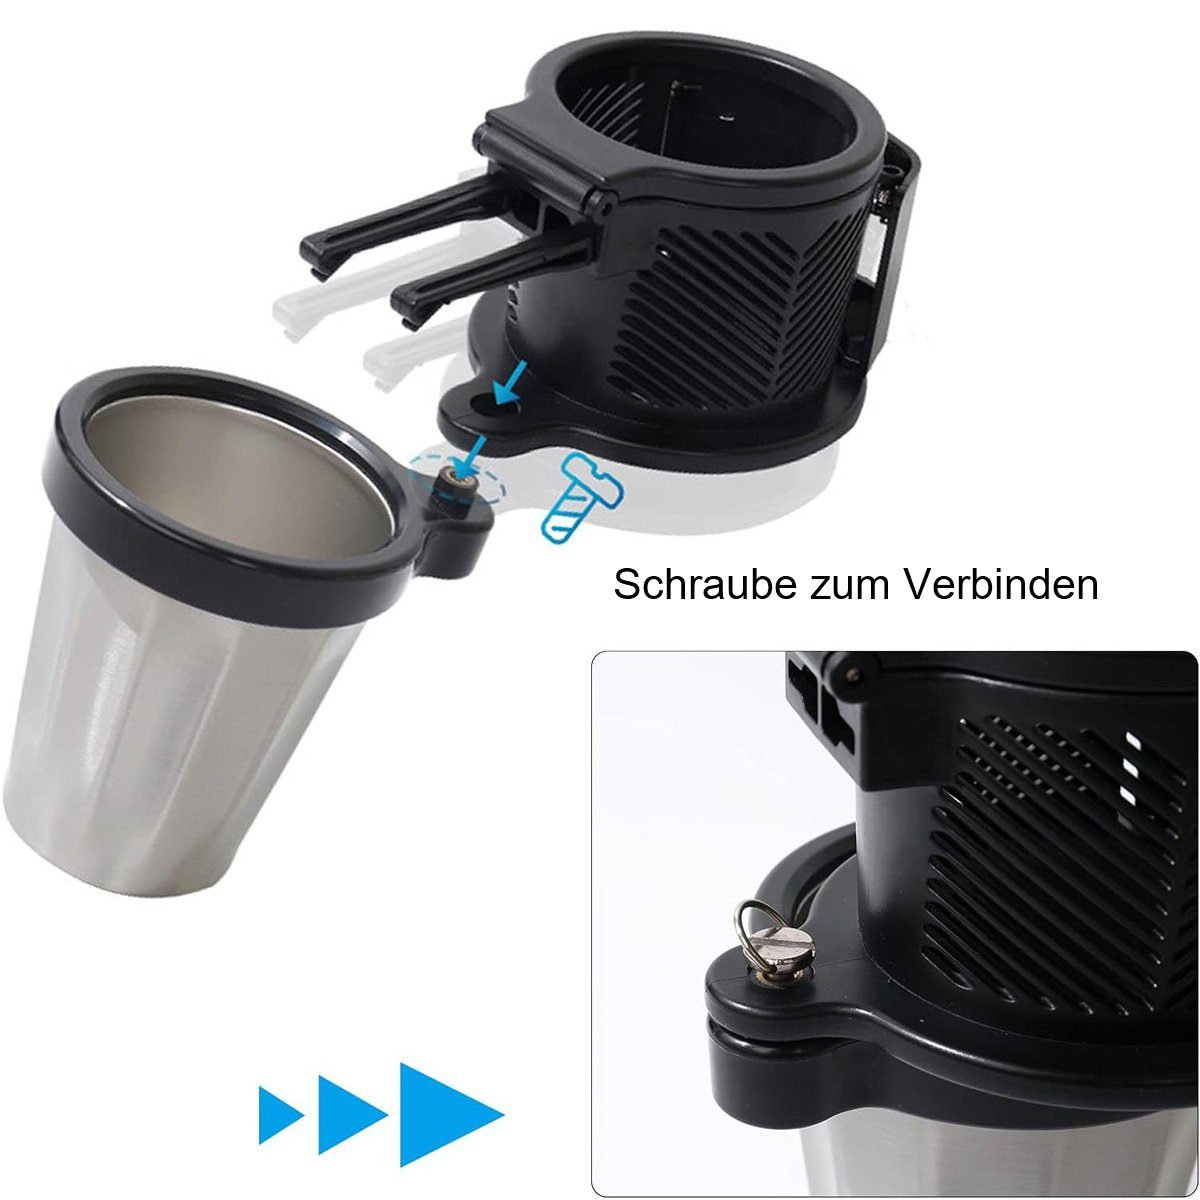 götäzer Becherhalter Universal 3-in-1 Auto Cup Holder Extender mit  Edelstahl Cup Base, (1-St), Großes Format, 360° verstellbar, geeignet für  Getränke und Snacks